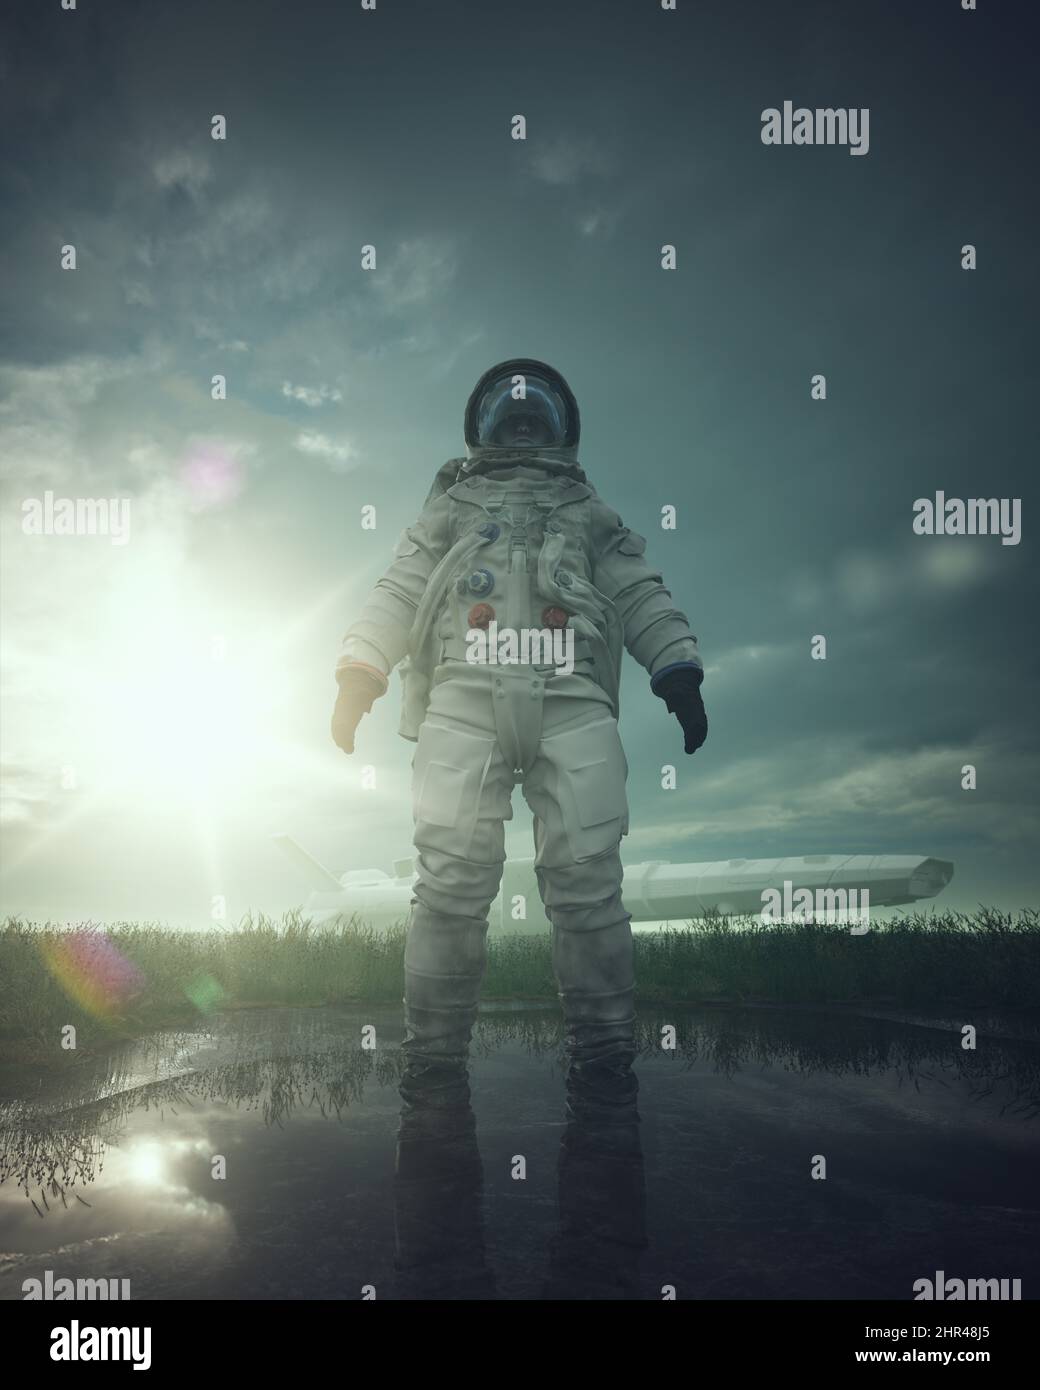 Frau Astronaut Post apokalyptische Extra-terrestrische Sci-Fi Fantasy Grassy Field Sun Lens Flare Raumschiff 3D Abbildung Rendern Stockfoto